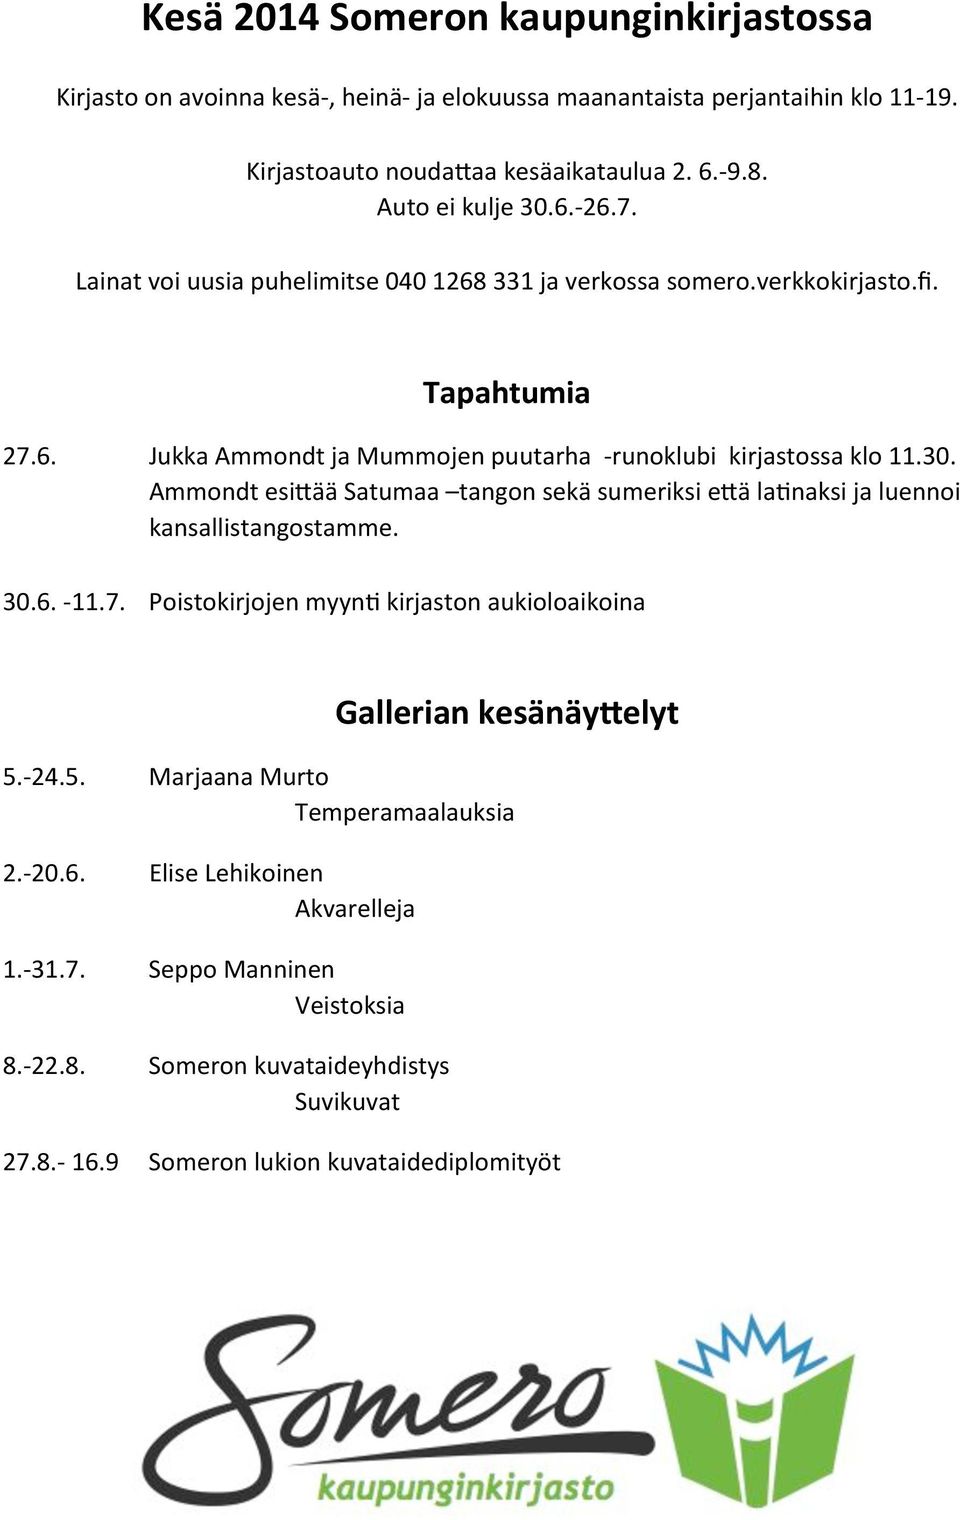 8.7'16.9' Jukka'Ammondt'ja'Mummojen'puutarha''7runoklubi''kirjastossa'klo'11.30. Ammondt'esi0ää'Satumaa' tangon'sekä'sumeriksi'e0ä'latnaksi'ja'luennoi kansallistangostamme.